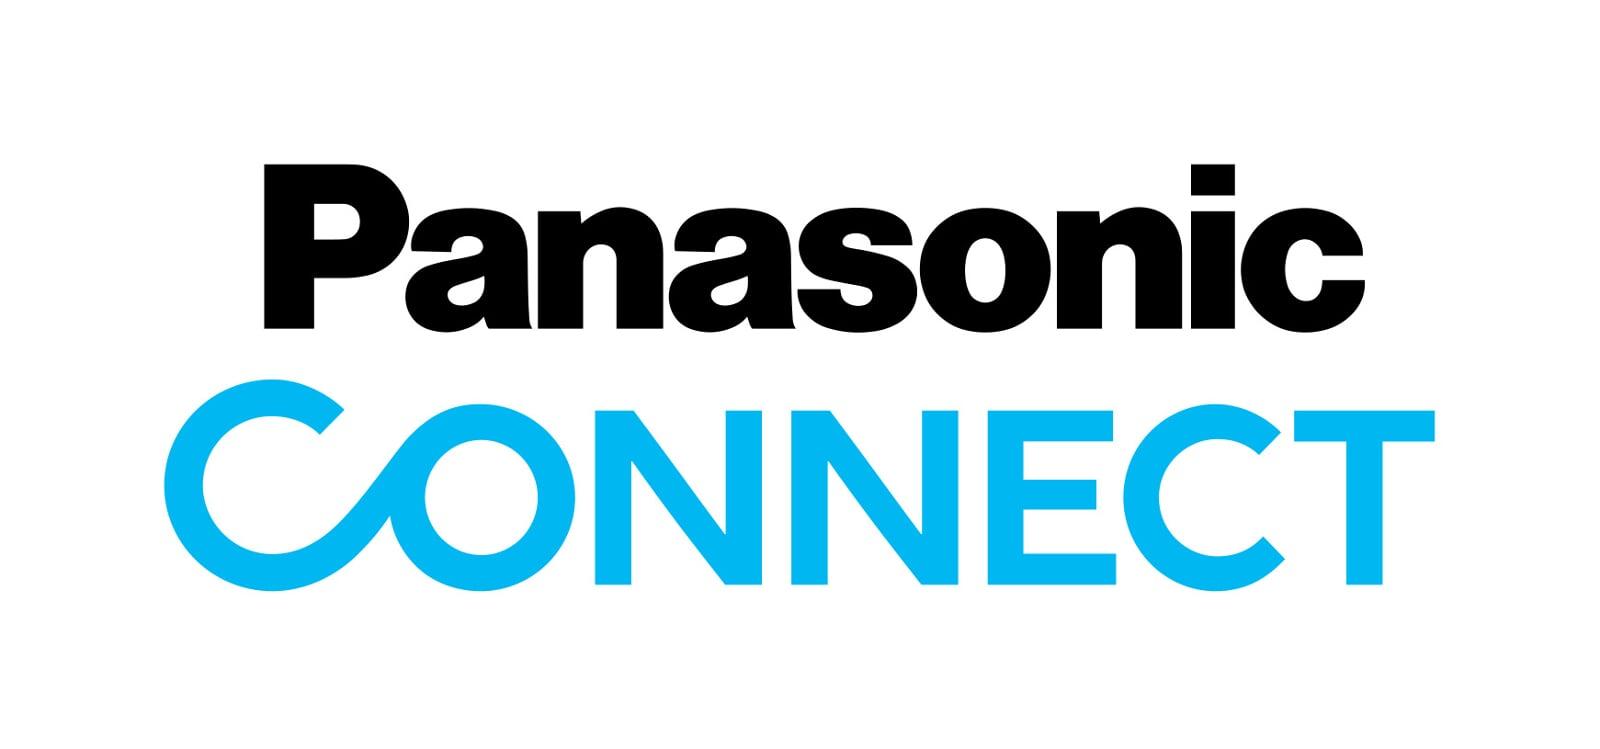 intoPIX client Panasonic Connect